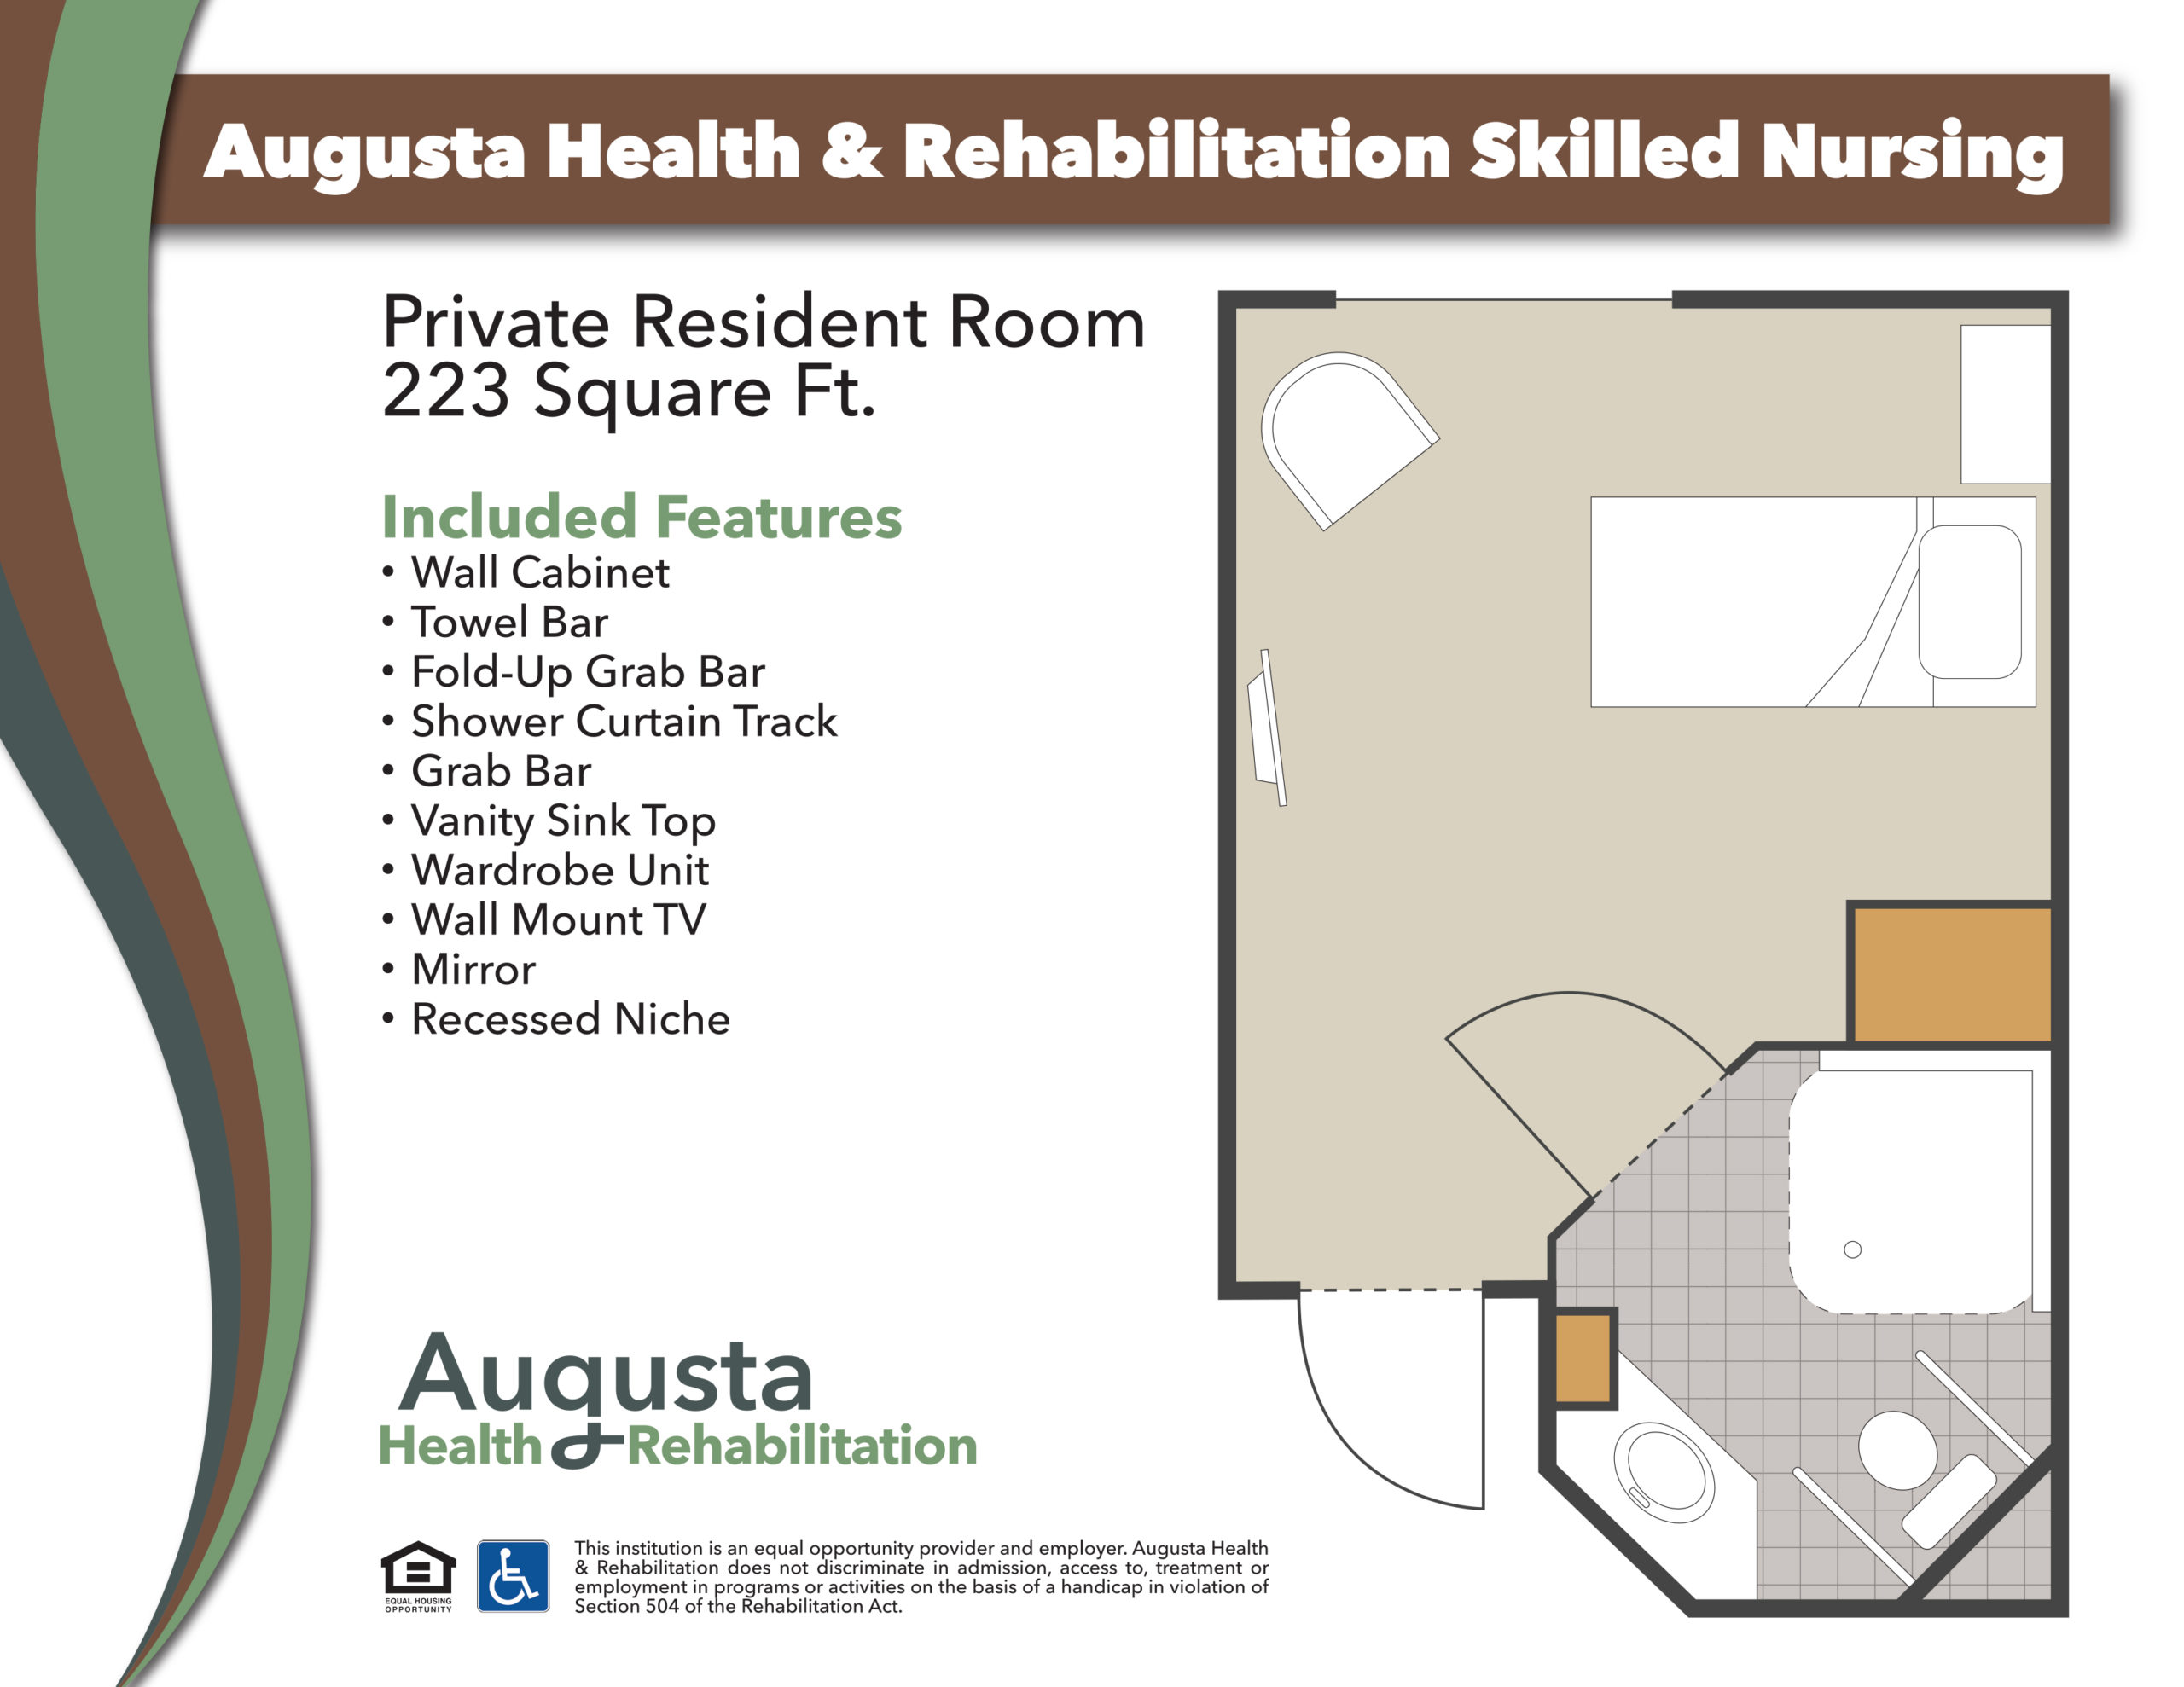 https://augustahealthandrehab.com/wp-content/uploads/2022/08/Augusta-Floor-Plans-Skilled-Nursing-1-scaled.jpg